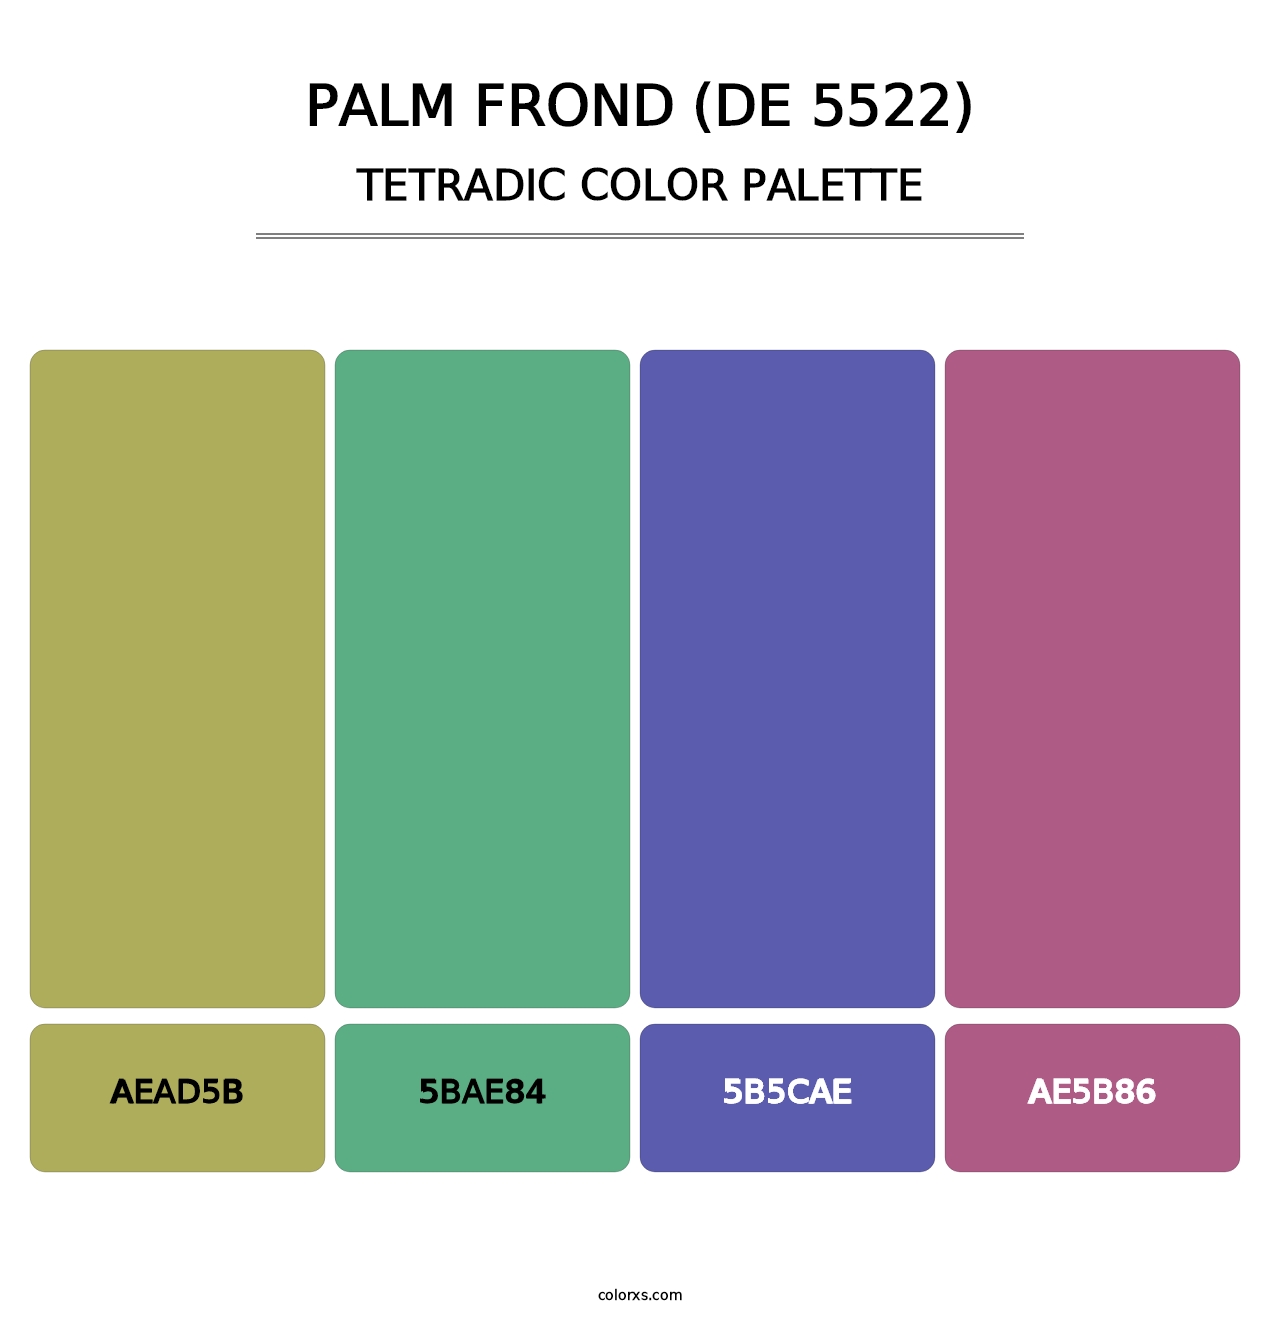 Palm Frond (DE 5522) - Tetradic Color Palette